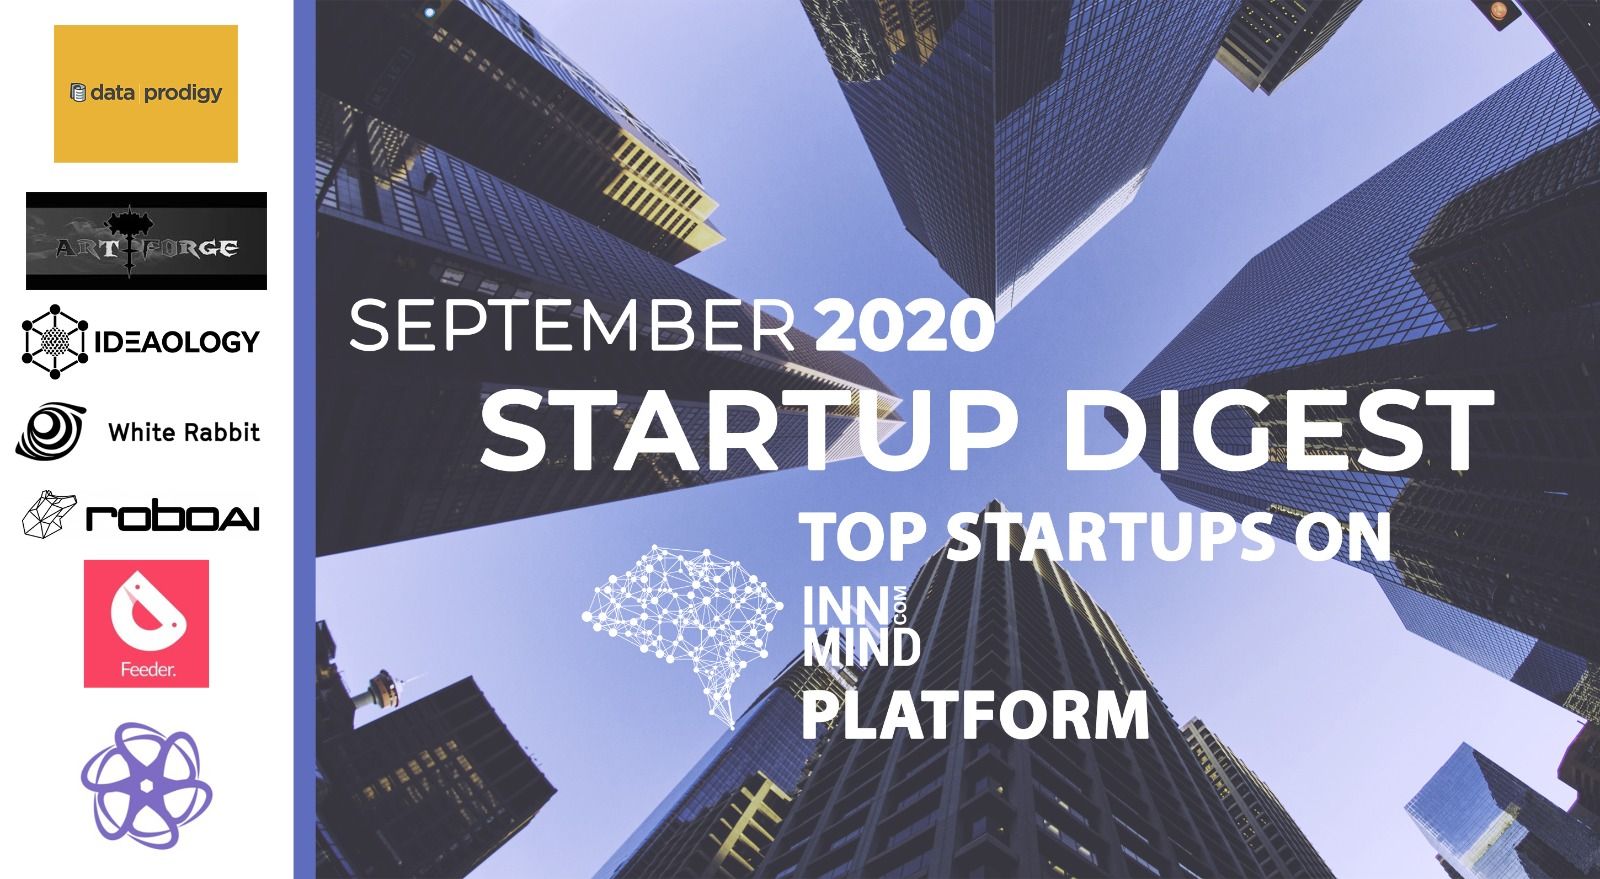 September 2020 Startup Digest: Top Startups on InnMind Platform